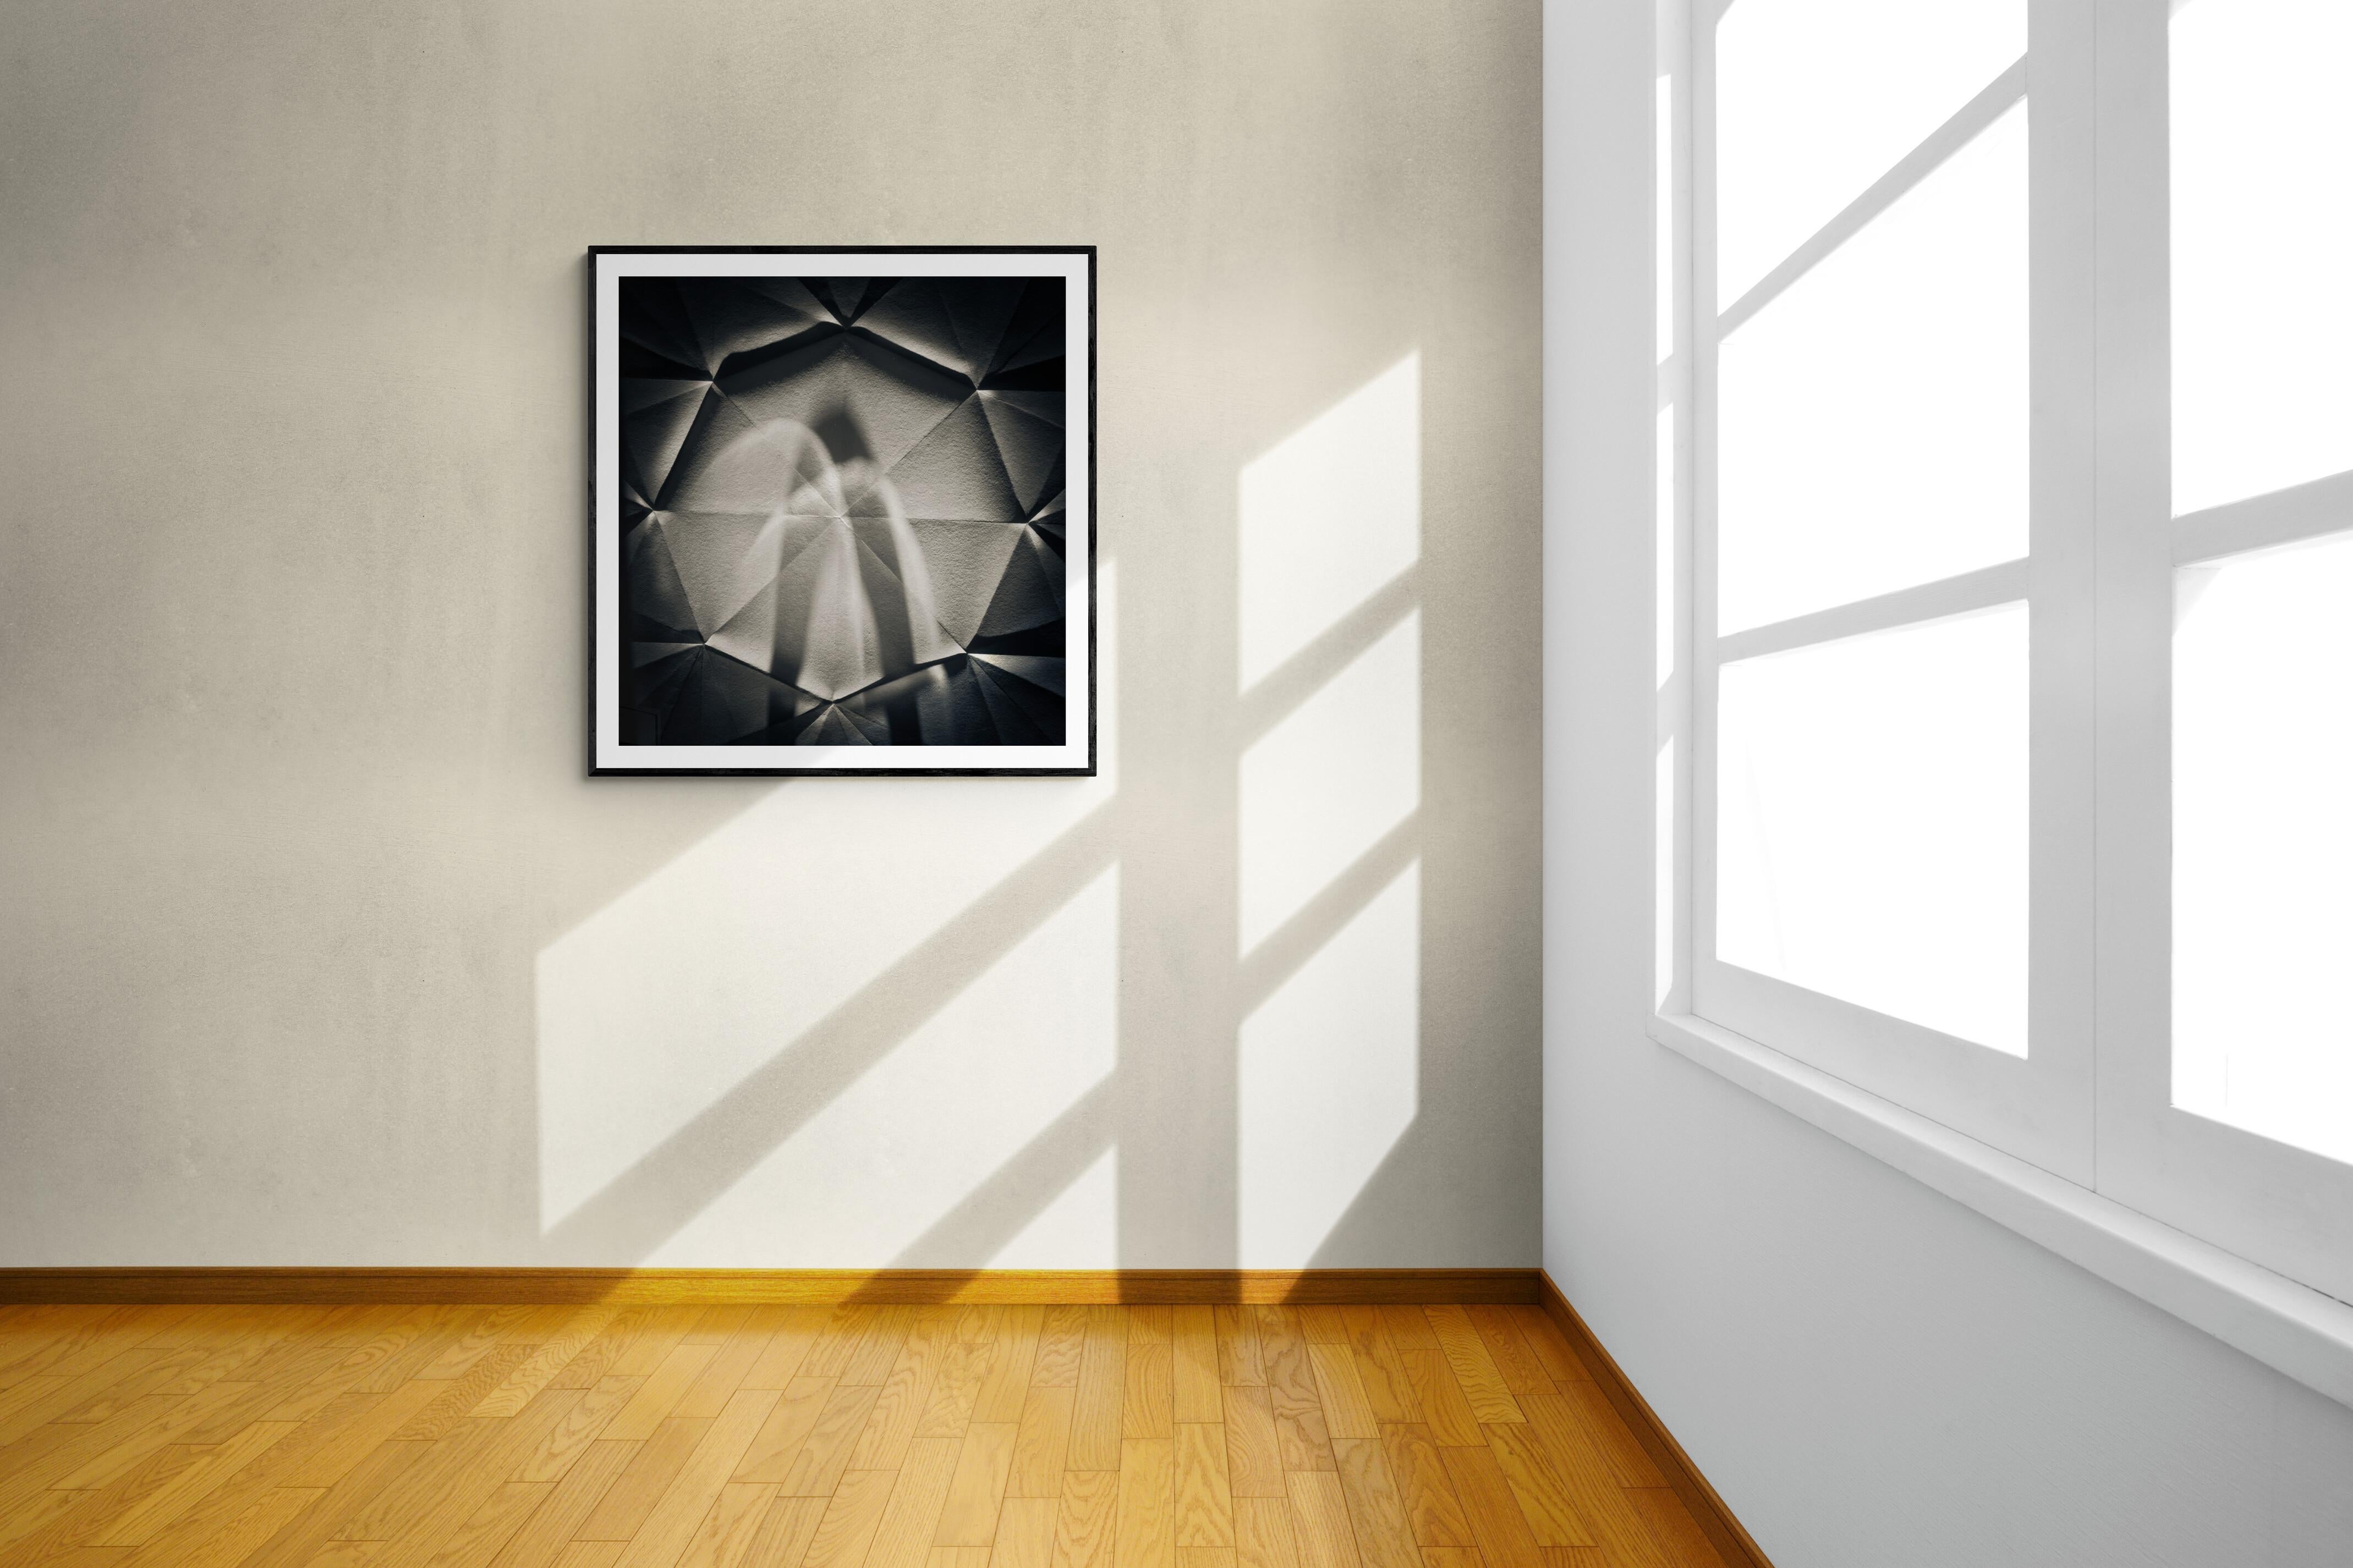  Limitierte Auflage 1 / 10 20 x 24 Schwarz-Weiß-Fotografie - Origami Abstract #73

Untitled #73 aus der Serie Origami Foldes war bereits in mehreren Museumsausstellungen und Unternehmenssammlungen zu sehen.

Der Astrophysiker Koryo Miura schuf 1995